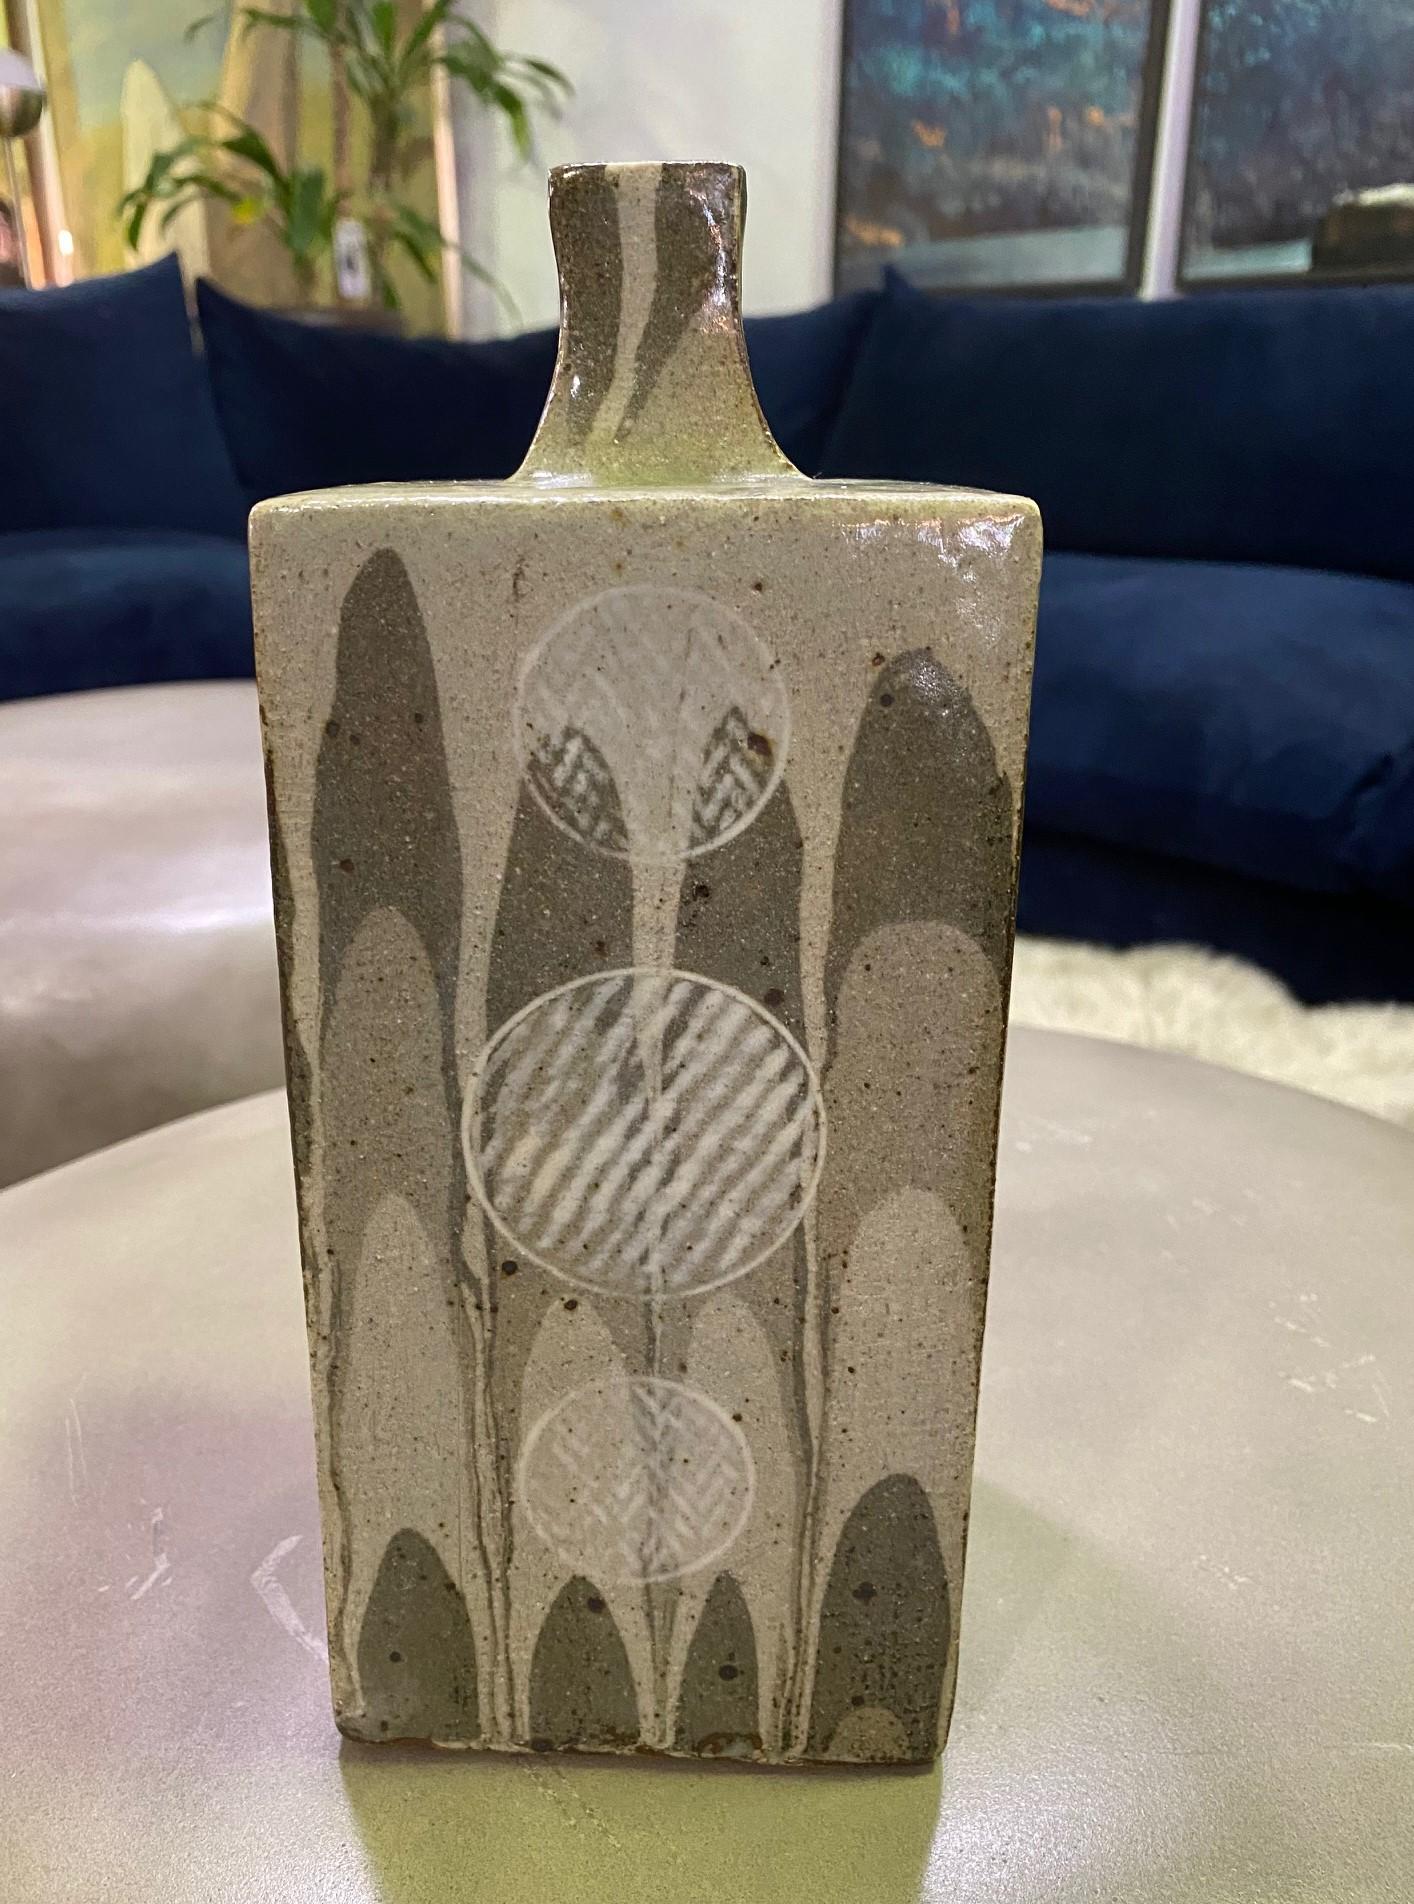 Earthenware Tatsuzo Shimaoka Signed Monumental Japanese Drip Glazed Pottery Ceramic Vase